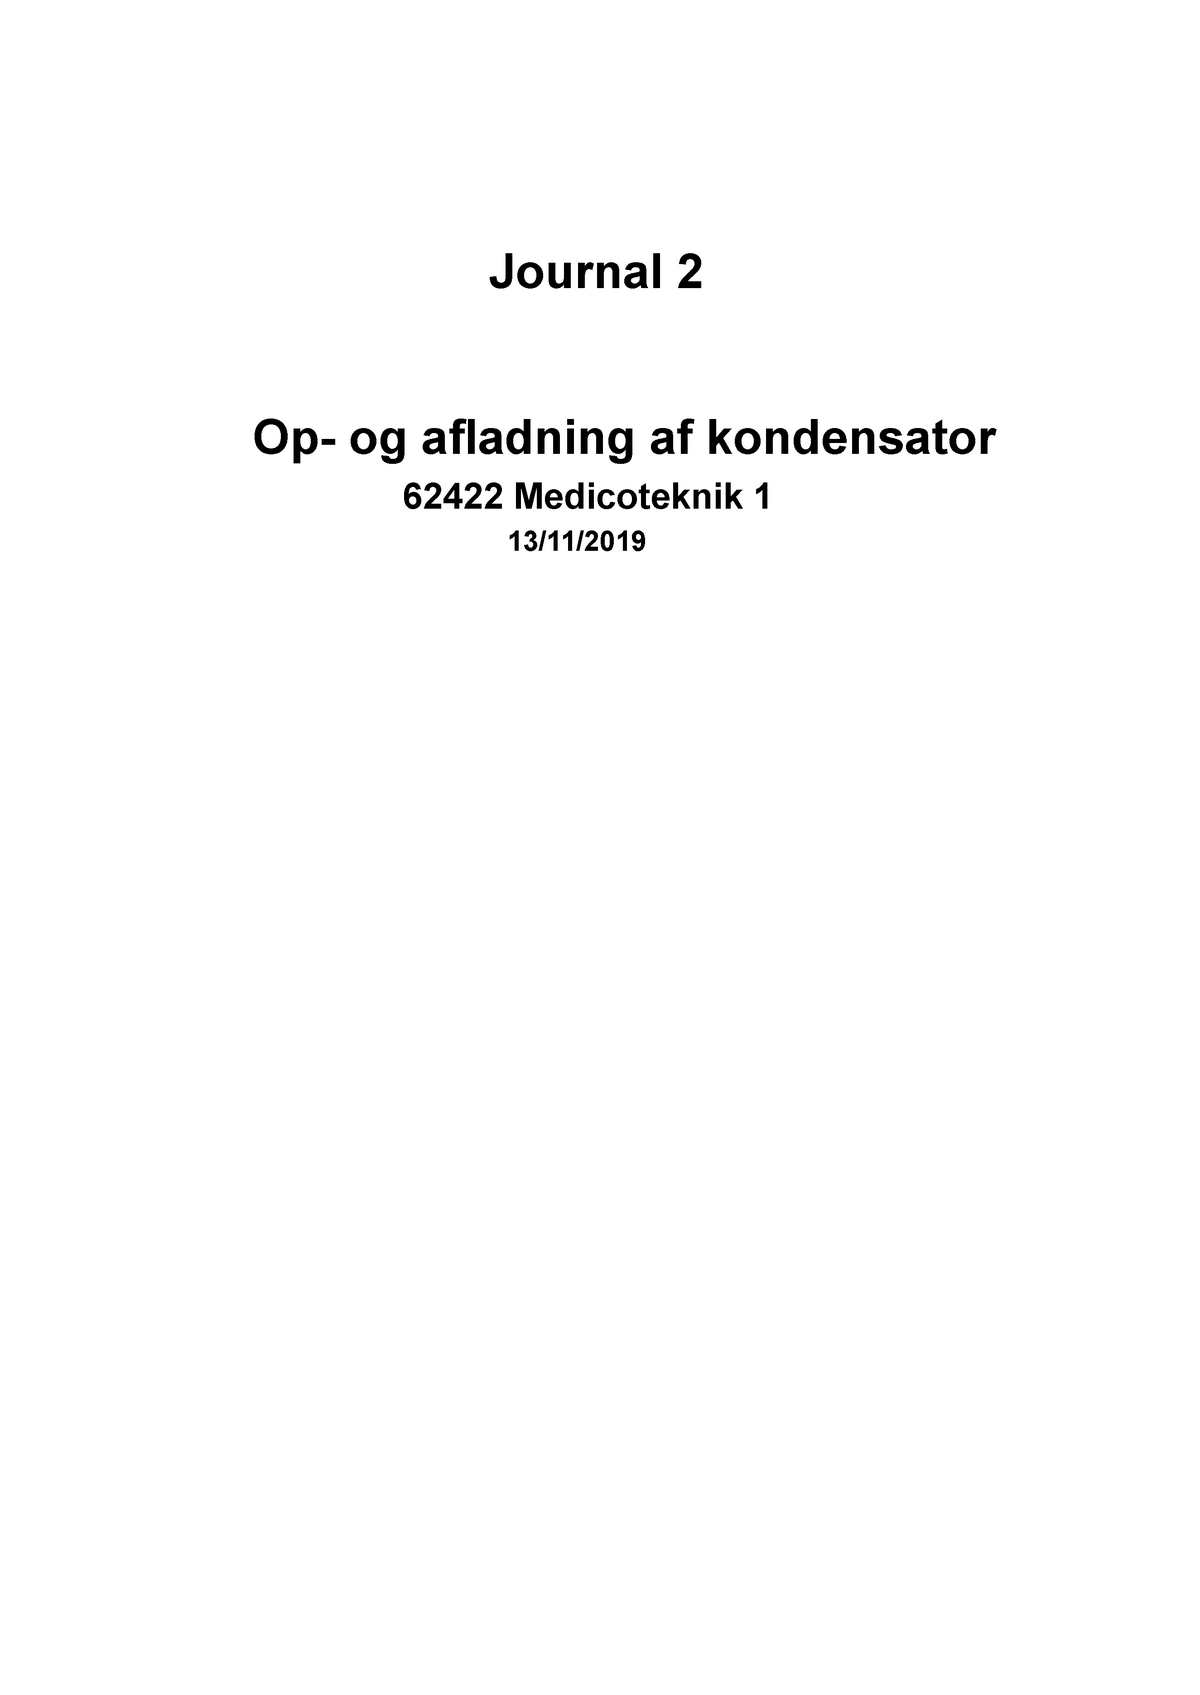 Journal 2 - Journal 2 Op- og afladning af kondensator 62422 Medicoteknik 1 13/11/ Abstract In - Studocu